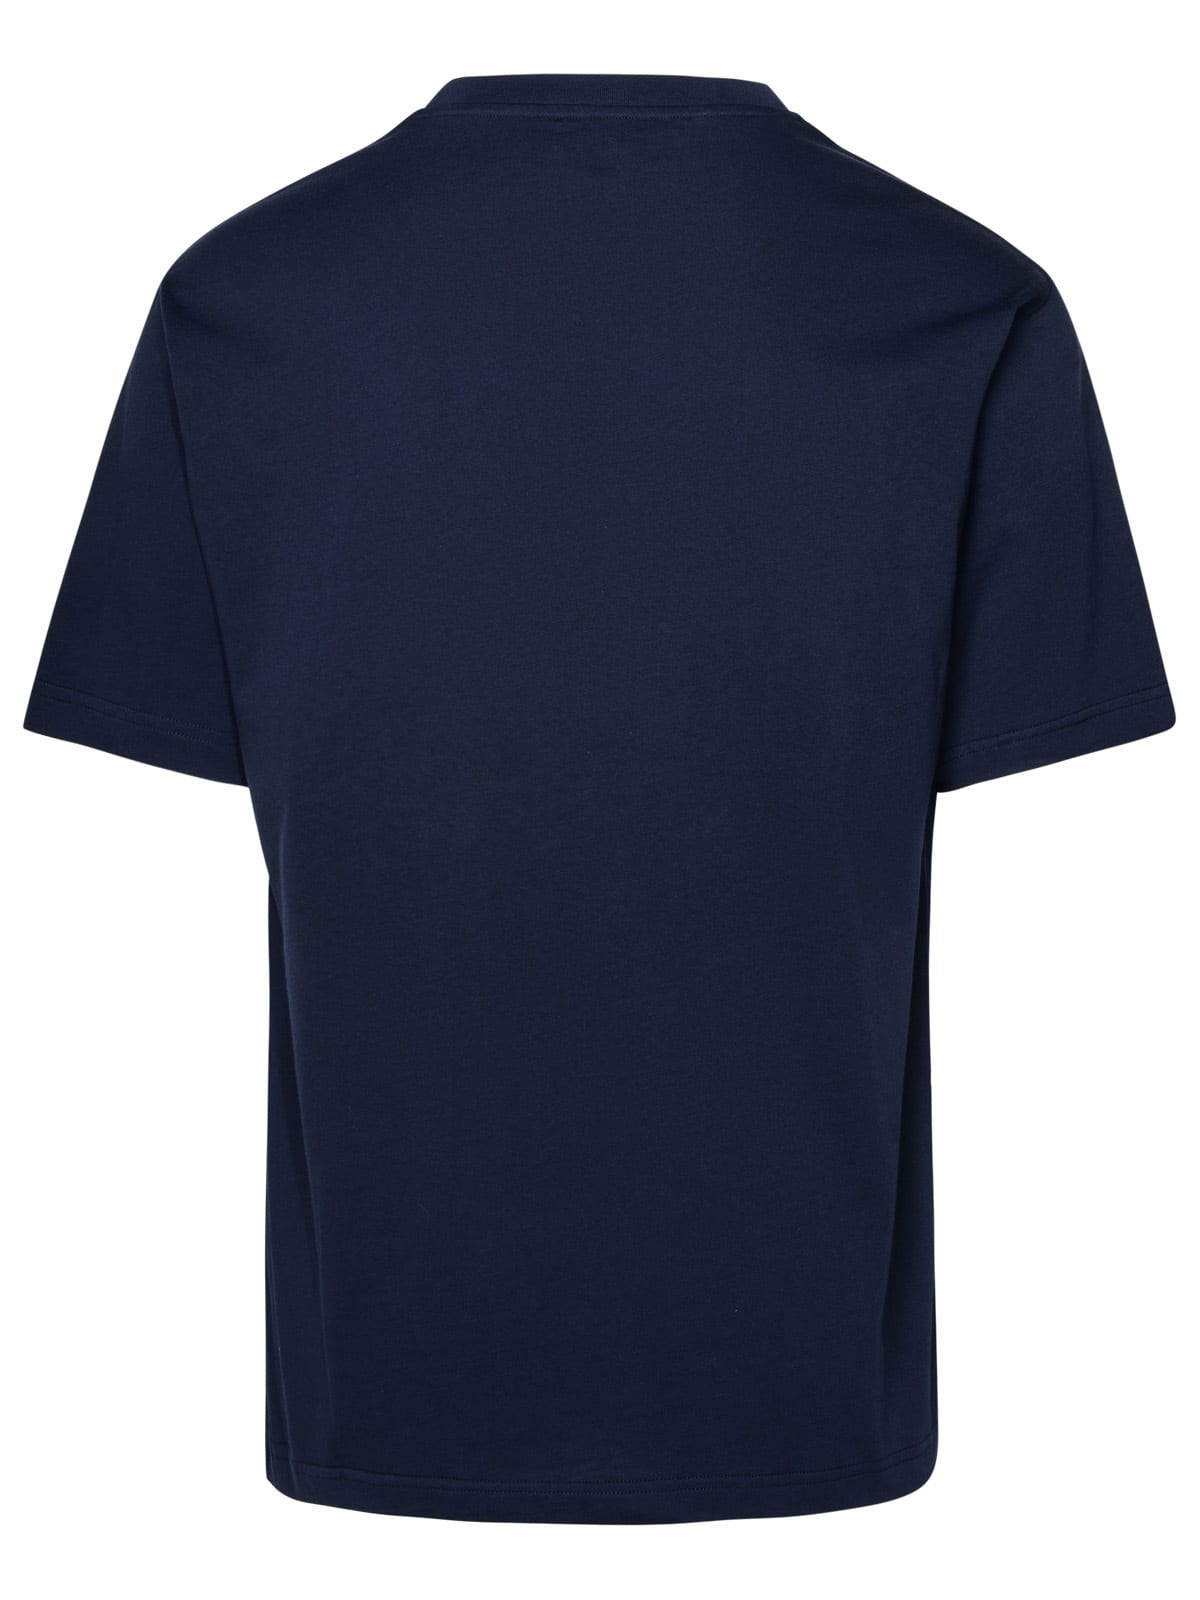 Shop Apc Blue Cotton T-shirt In Navy